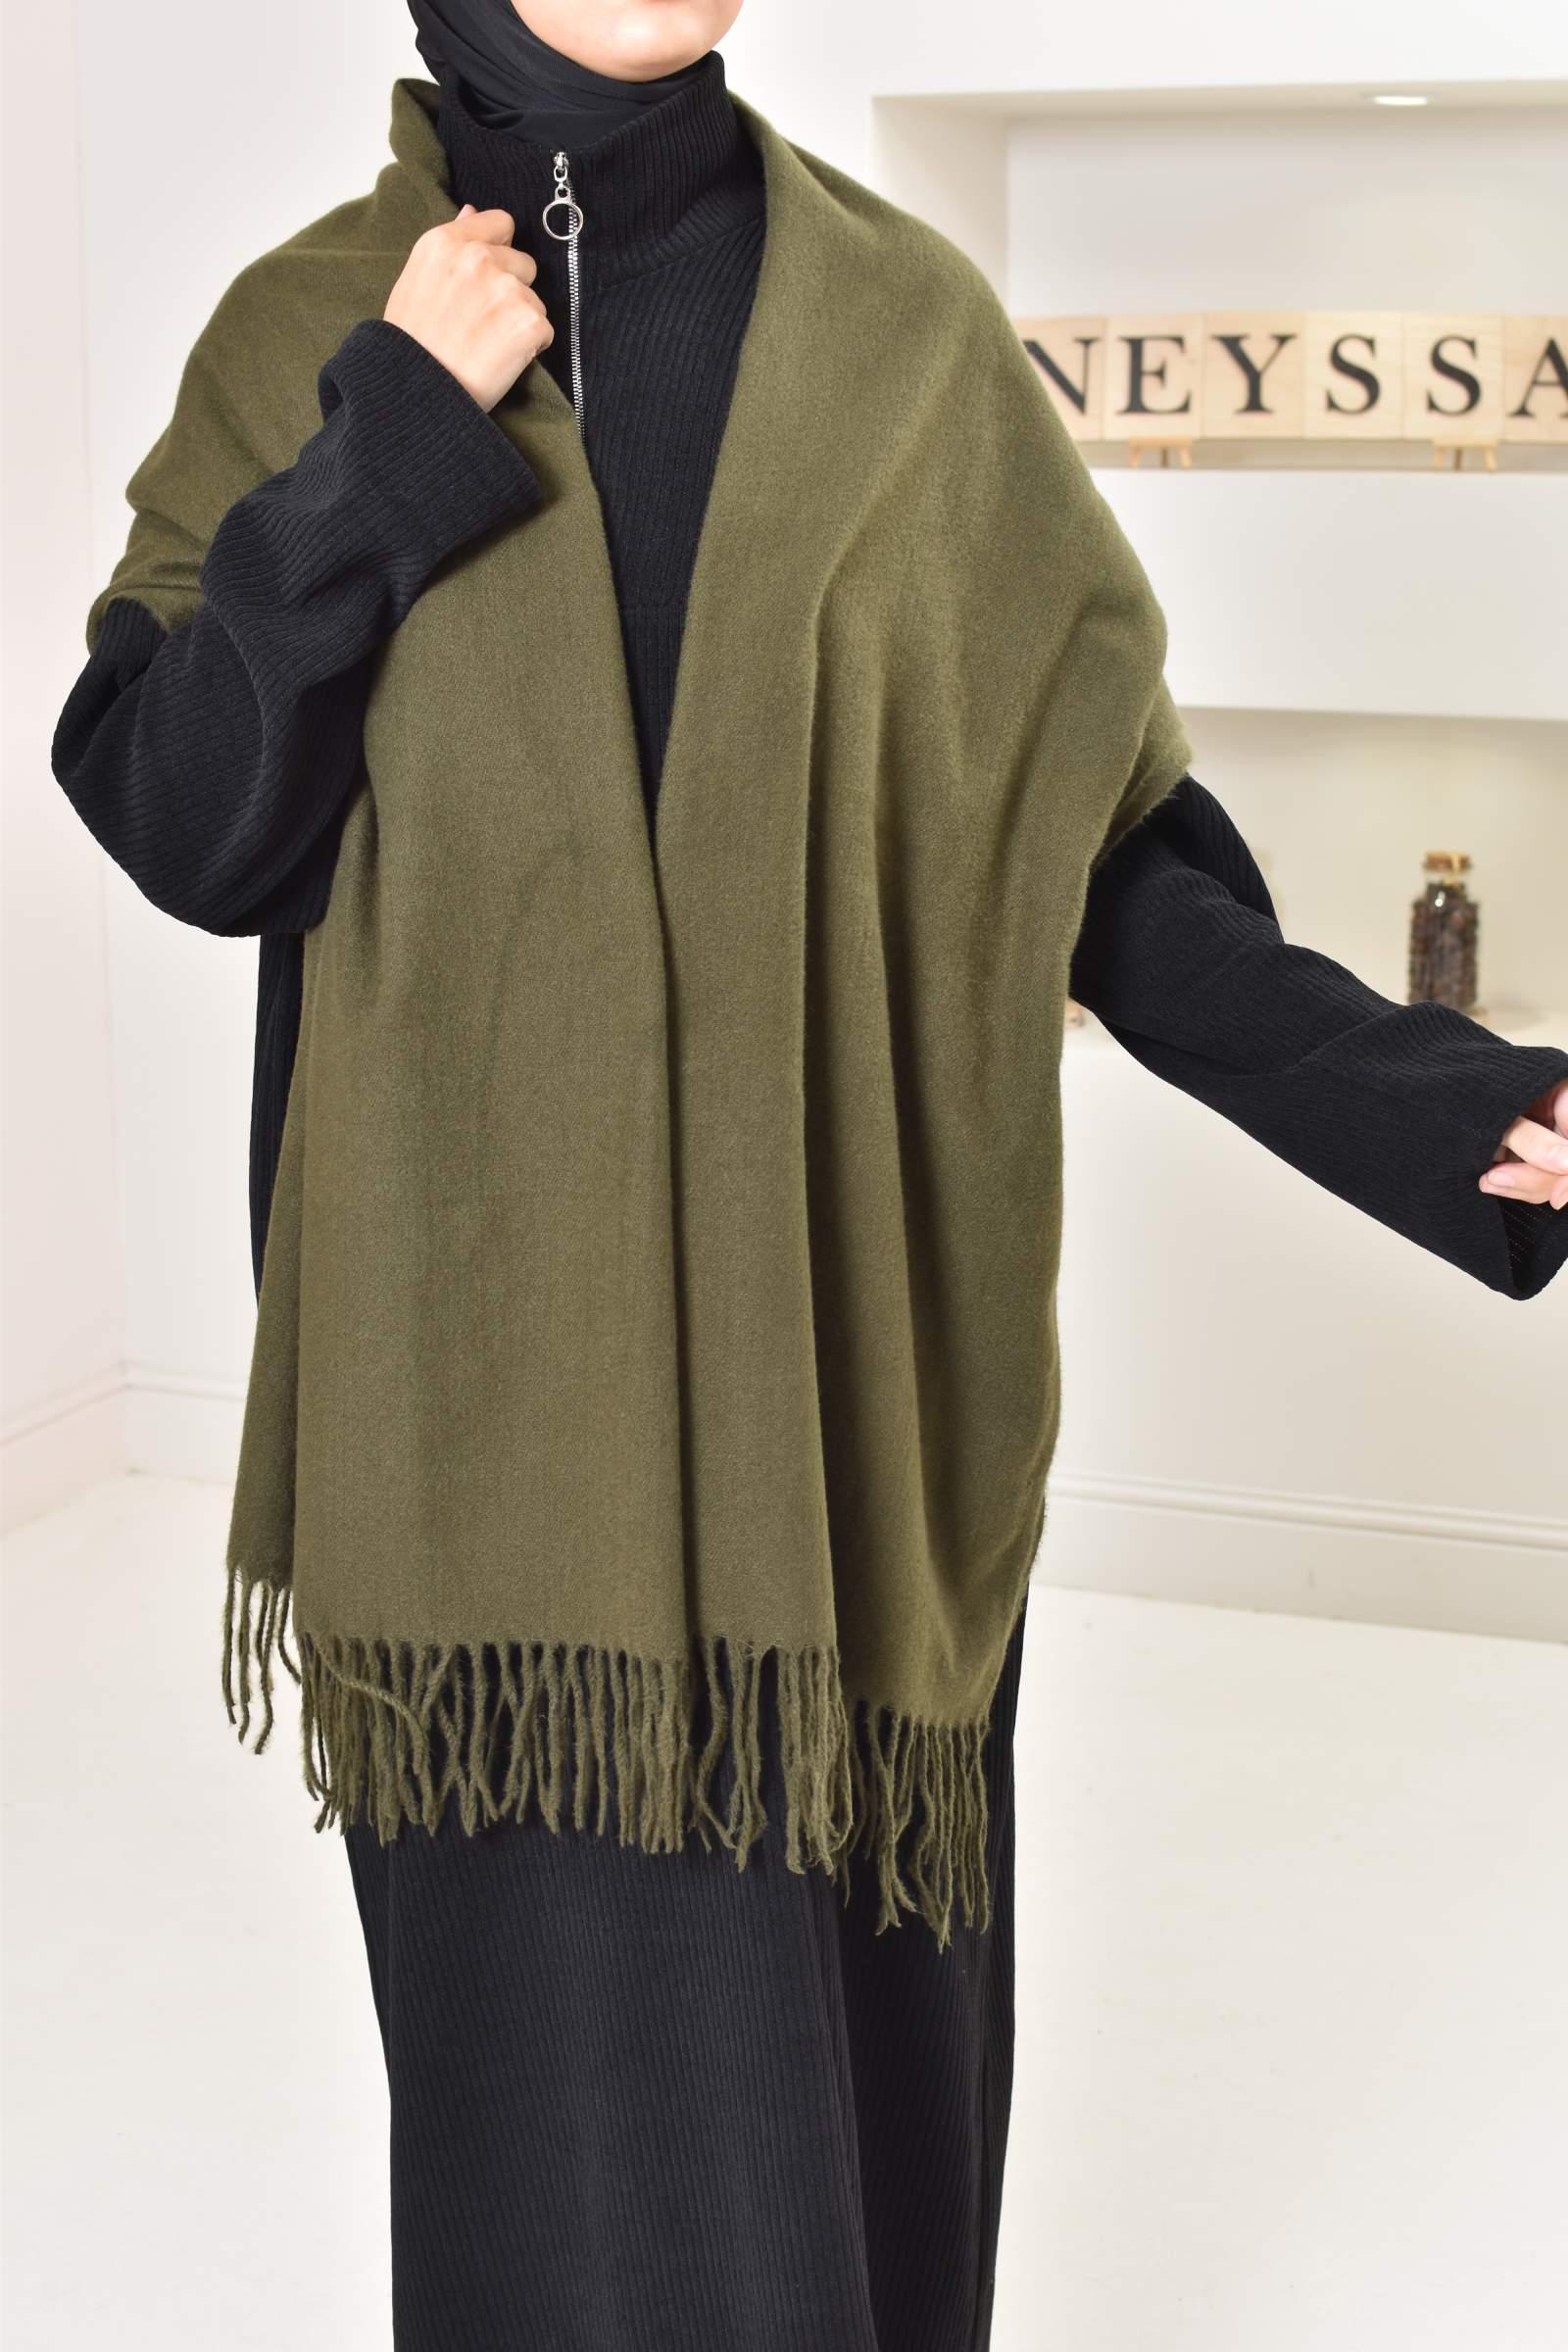 Écharpe capuche chaud et à la mode pour l'hiver ❤️ Irema Slow Fashion